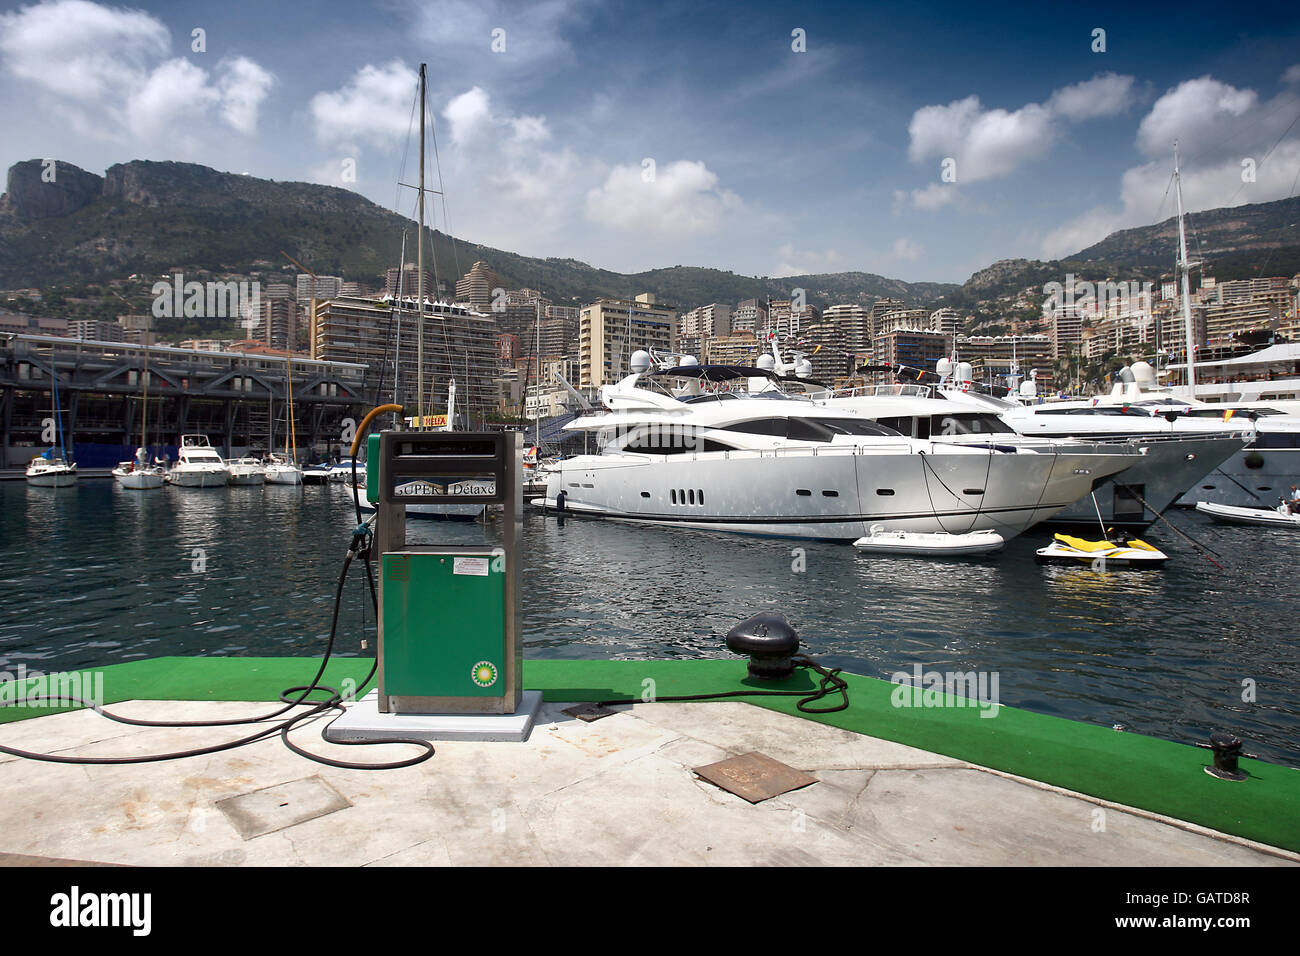 Allgemeiner Blick auf den Hafen von Monaco während des Grand Prix-Wochenende Stockfoto